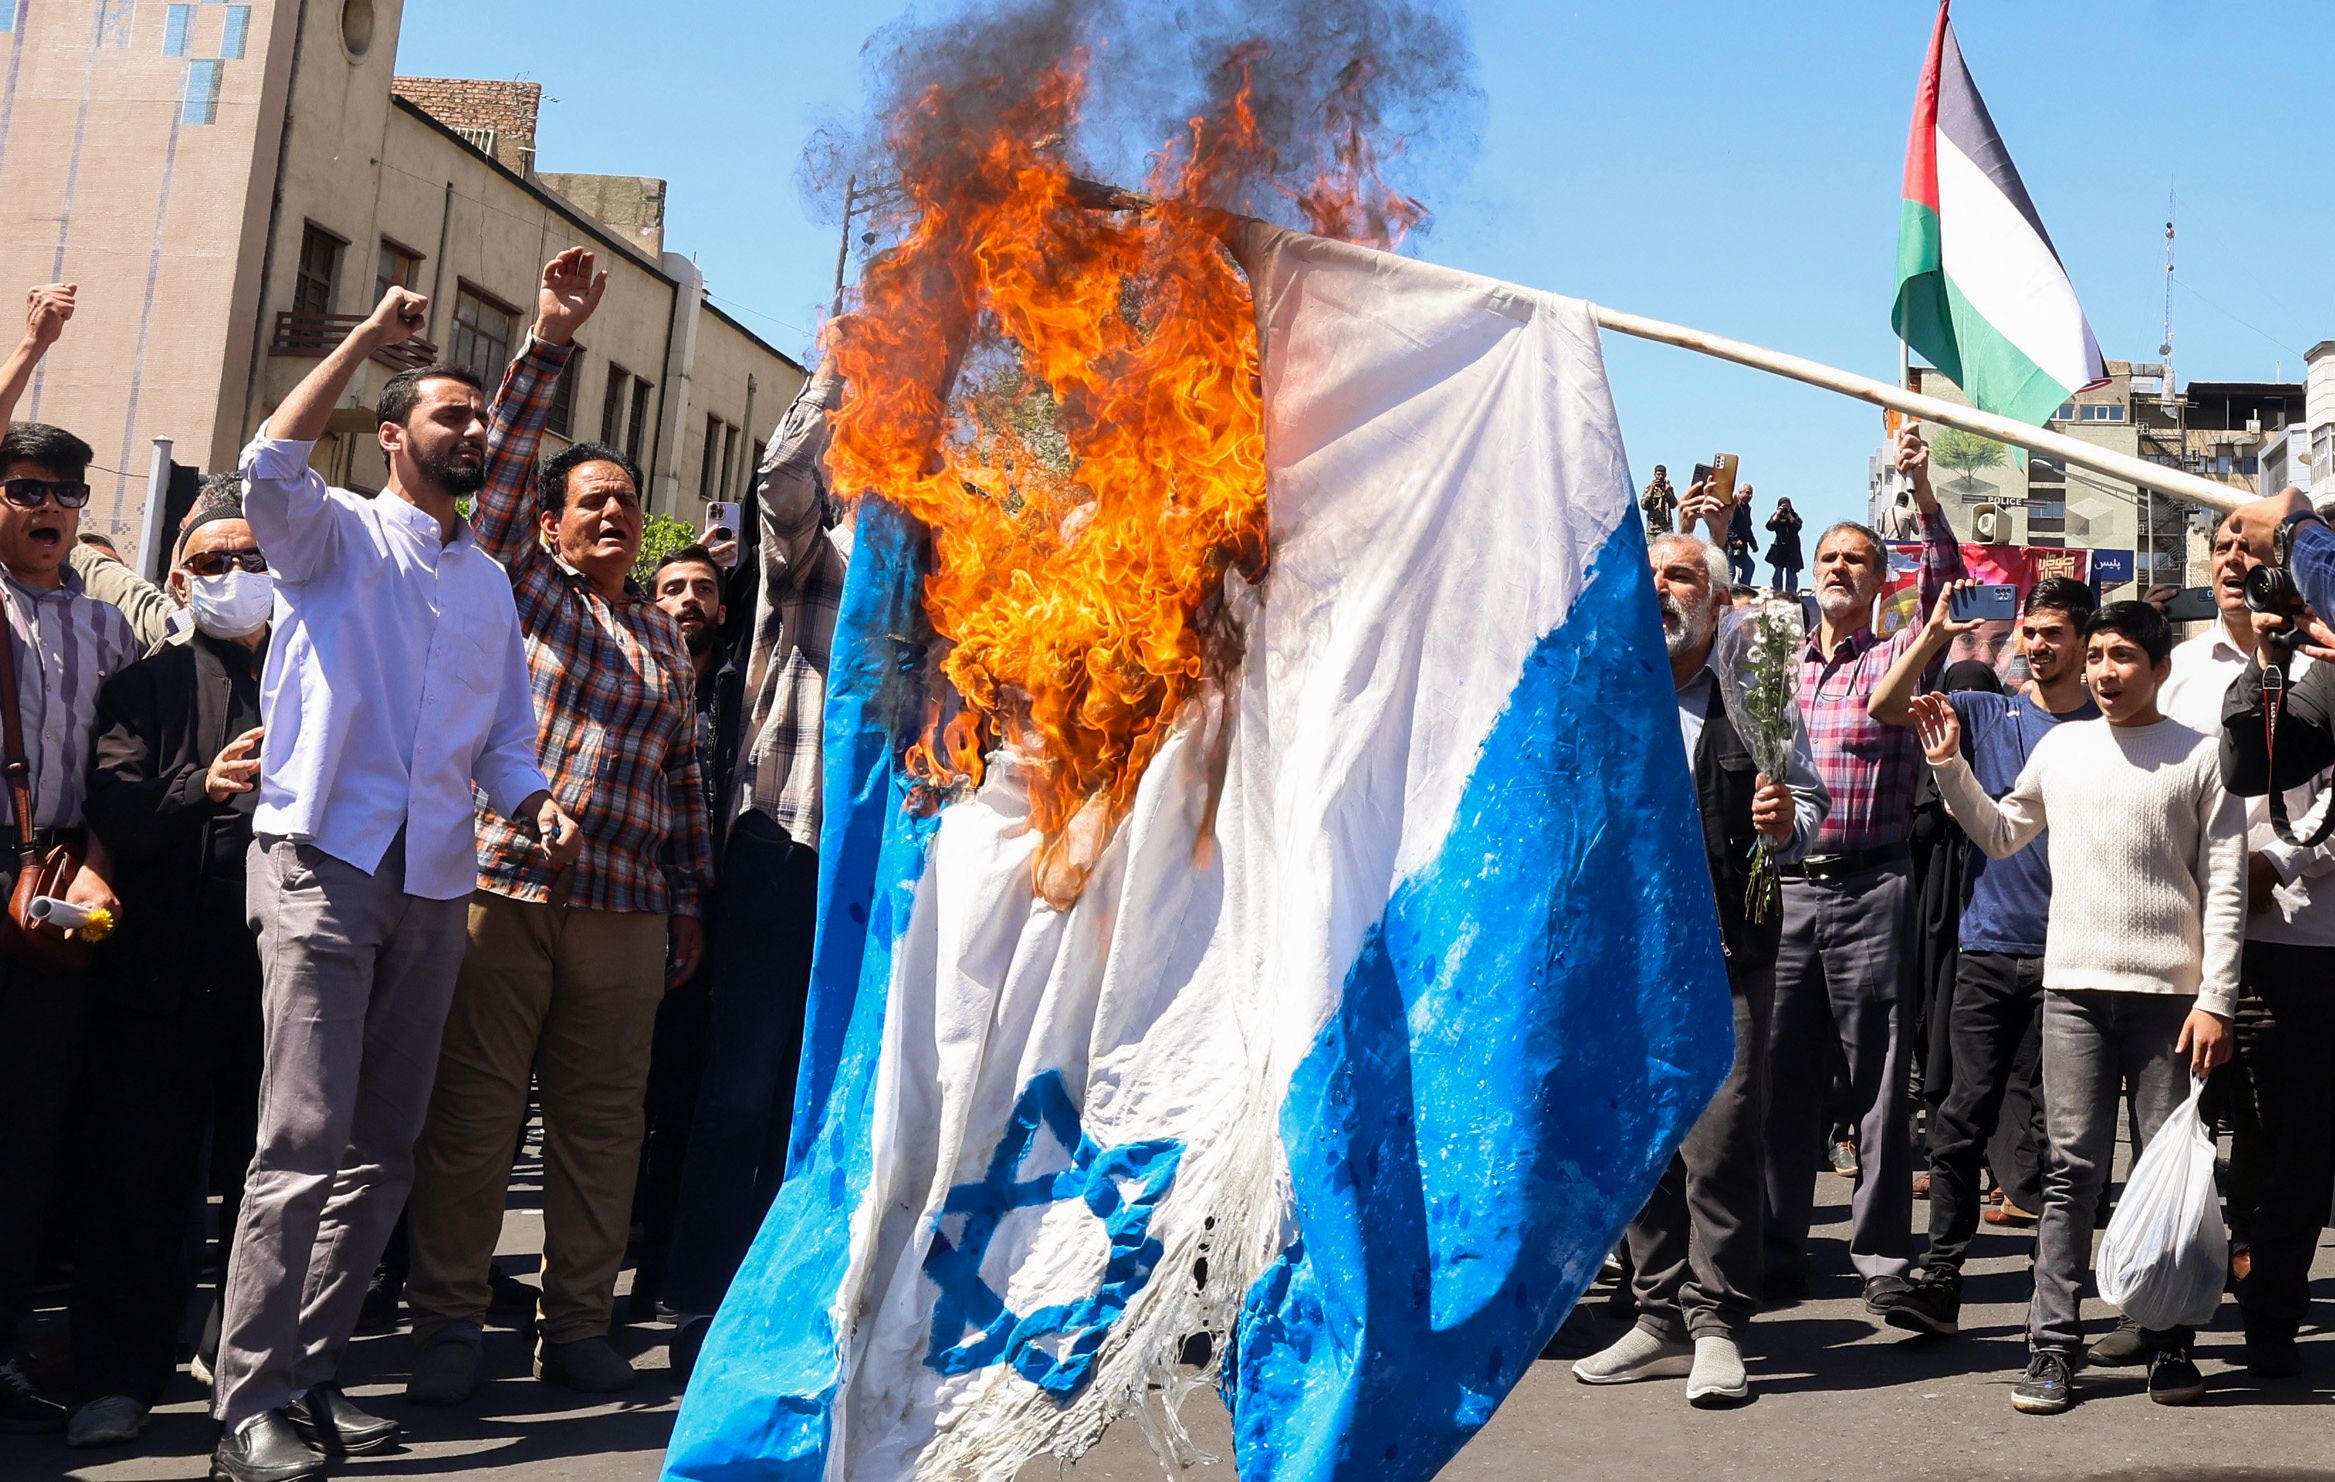 以色列表示将回应伊朗的飞弹和无人机攻击。图为伊朗民众上街焚烧以色列国旗。法新社